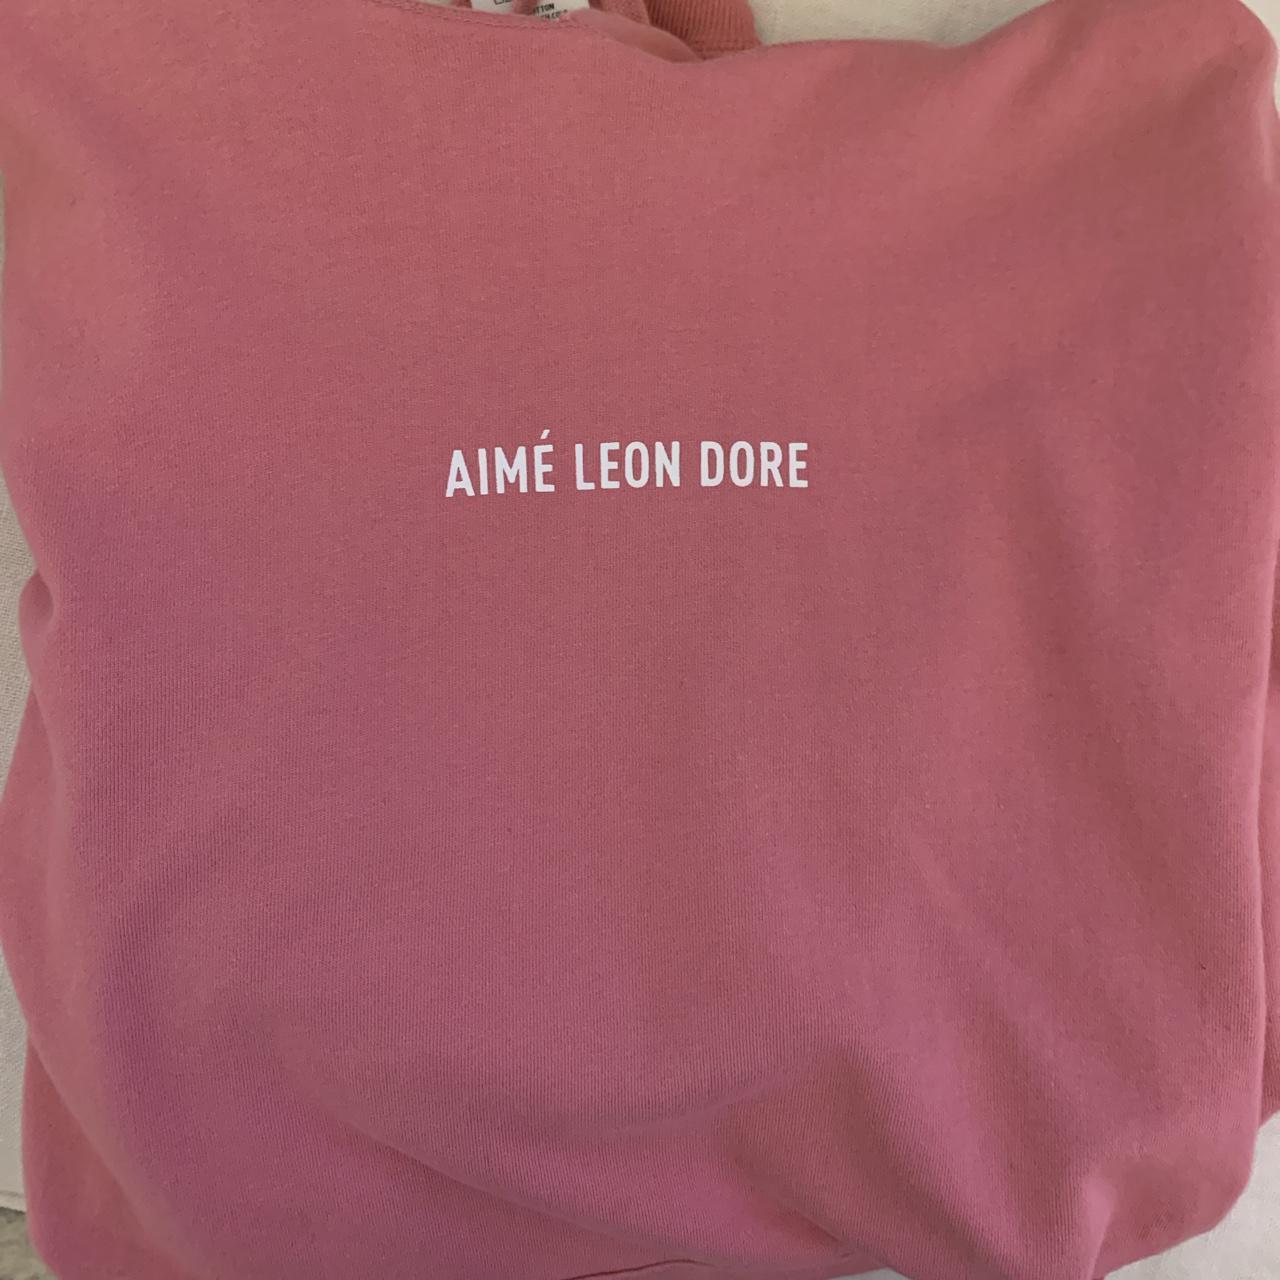 Aime León Dore Hoodie Very comfortable Great fit - Depop